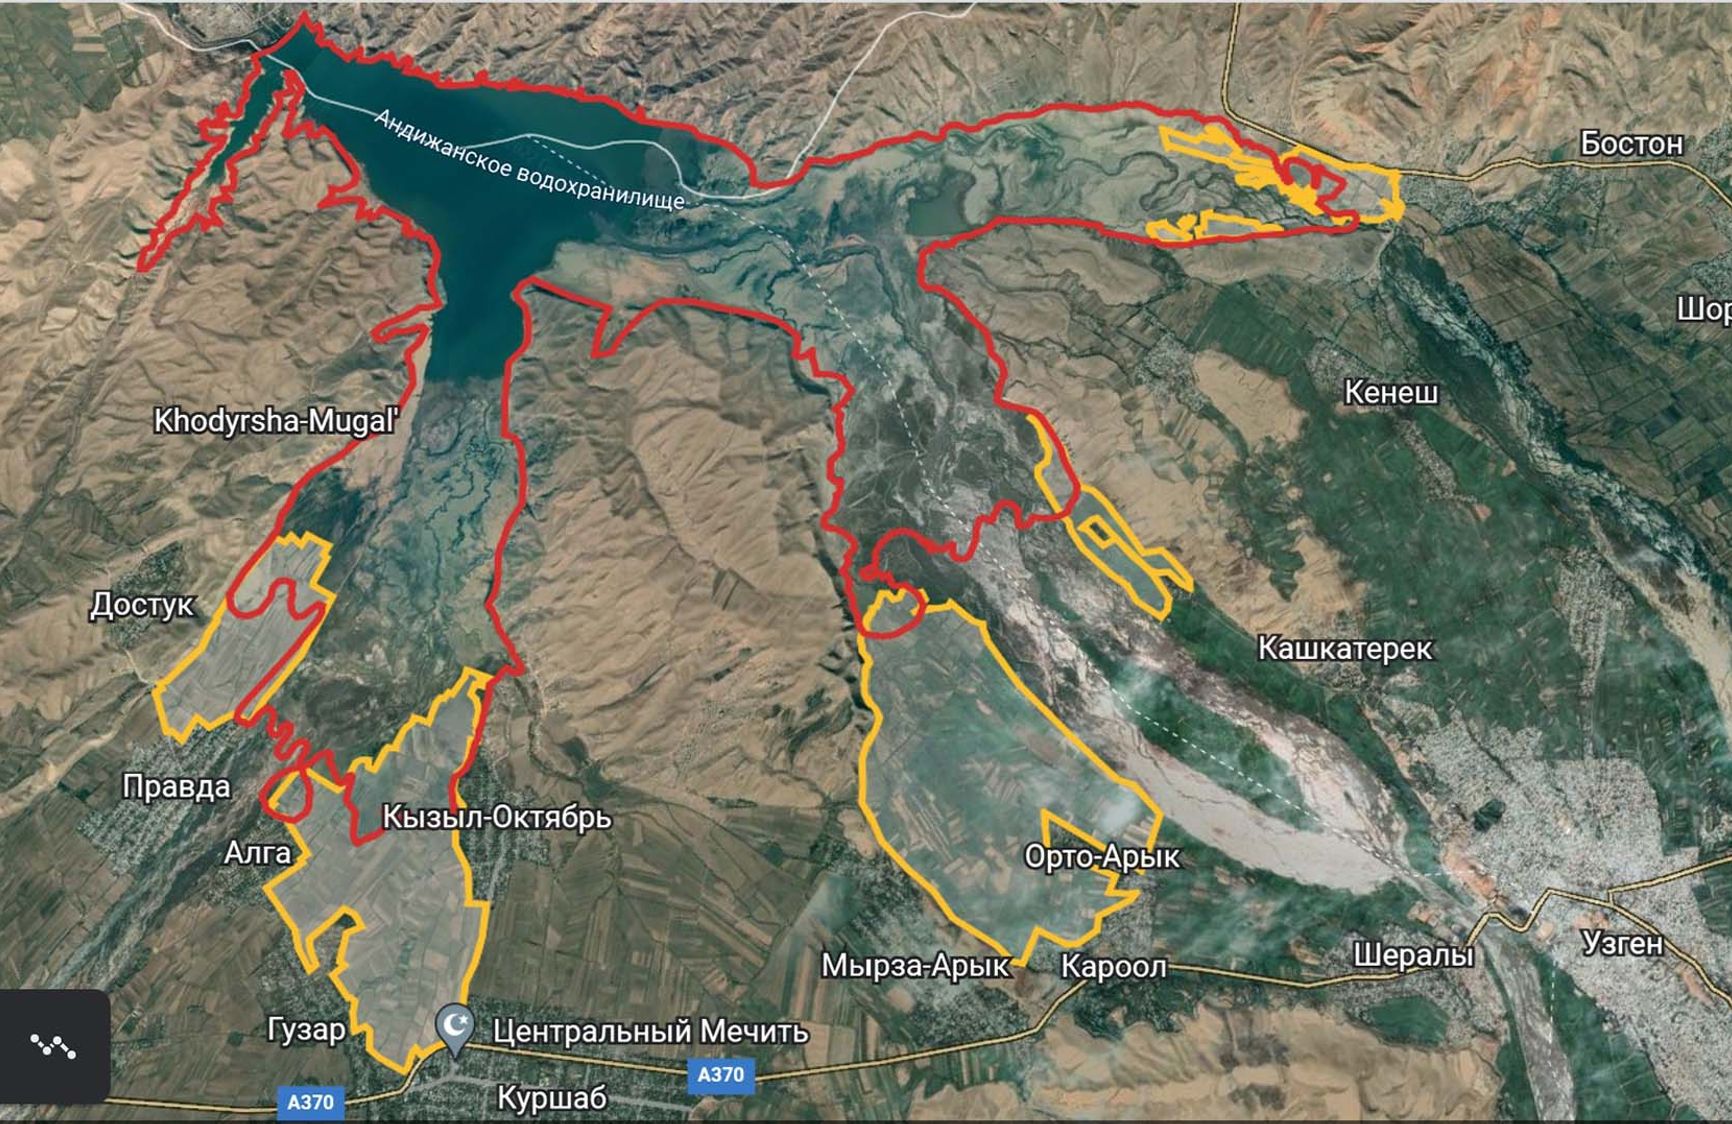 900-я горизонталь (отмечена красным) с наложением на поля в устьях трех рек – Куршаба (слева), Кара-Дарьи (в центре) и Жазы (справа вверху). Близлежащие поля местных жителей обозначены желтым